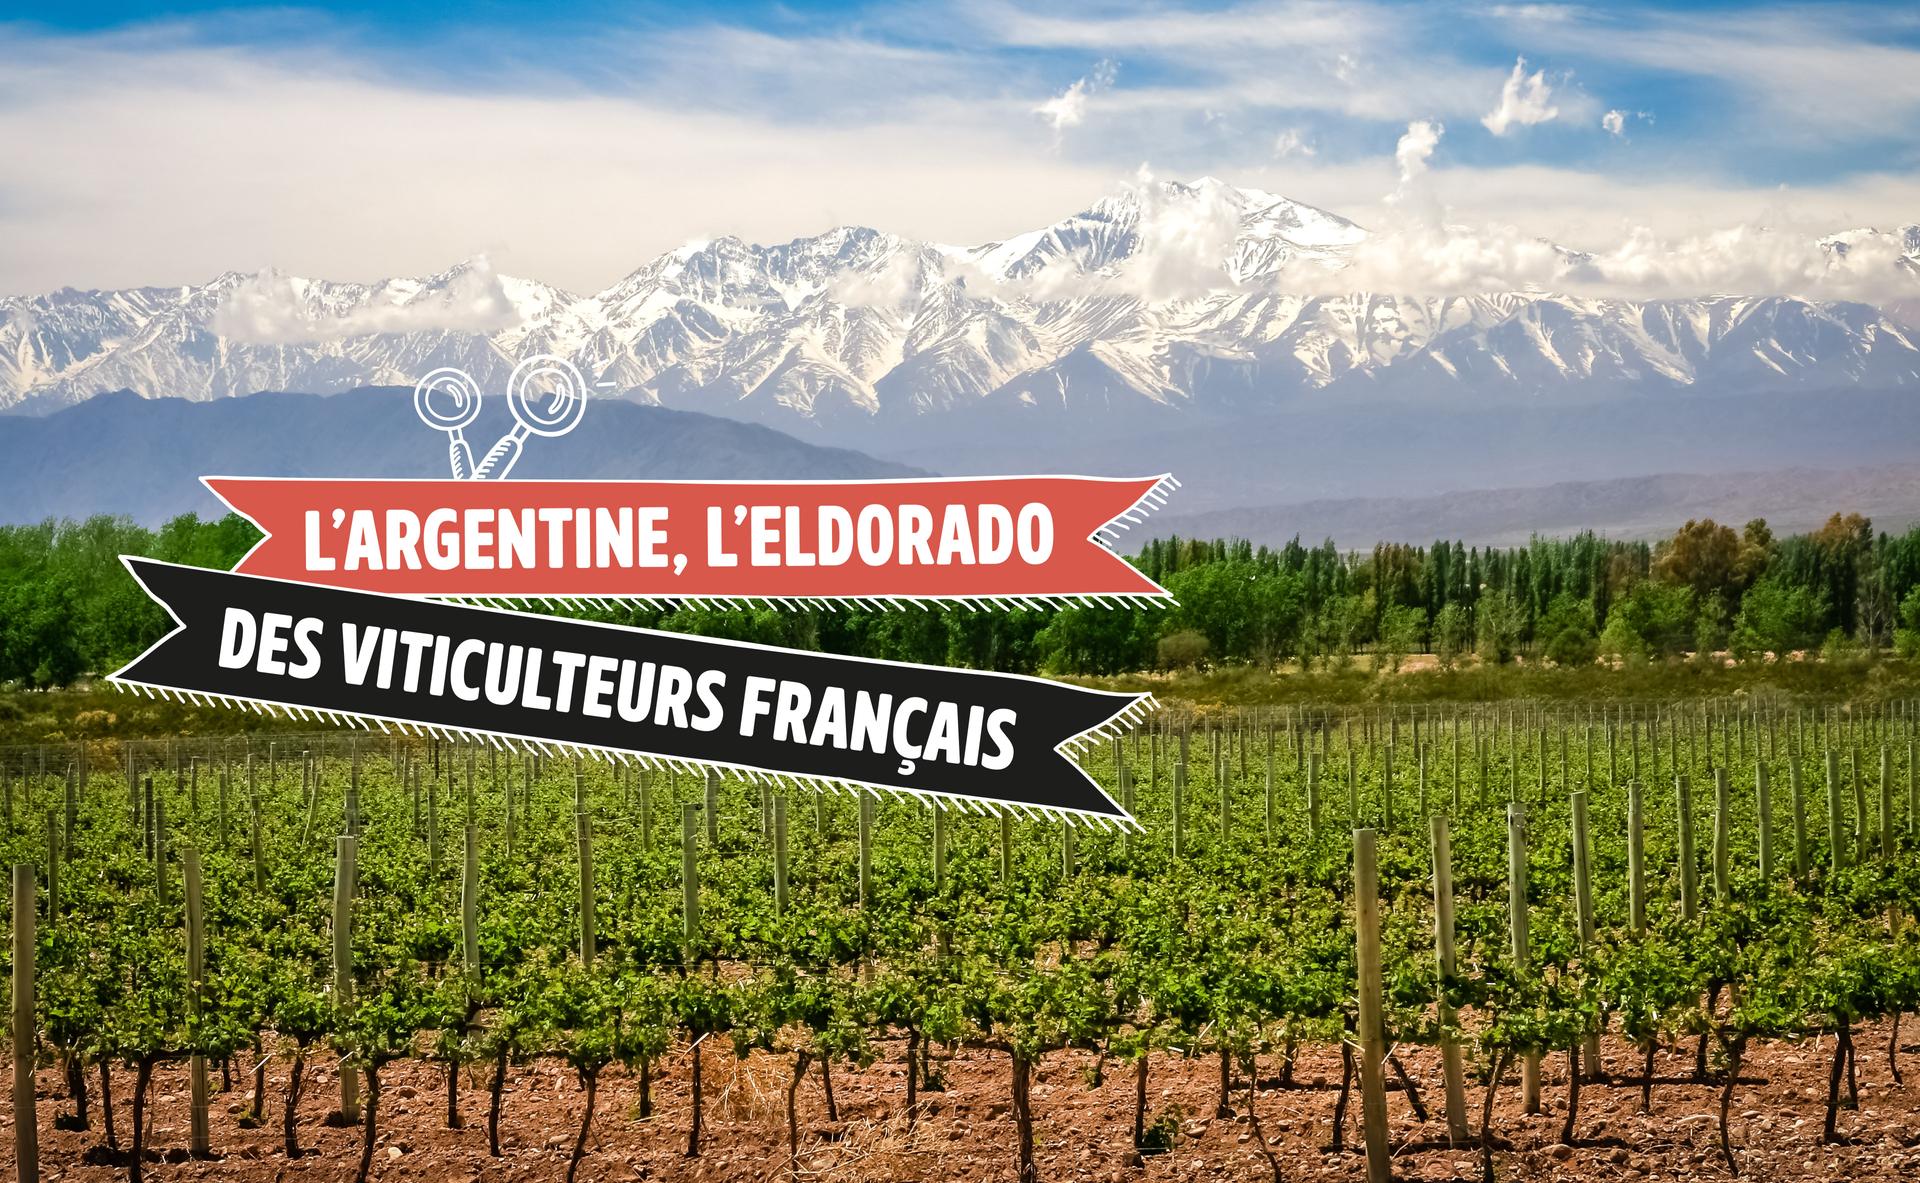 L’Argentine, eldorado des viticulteurs du Sud-Ouest